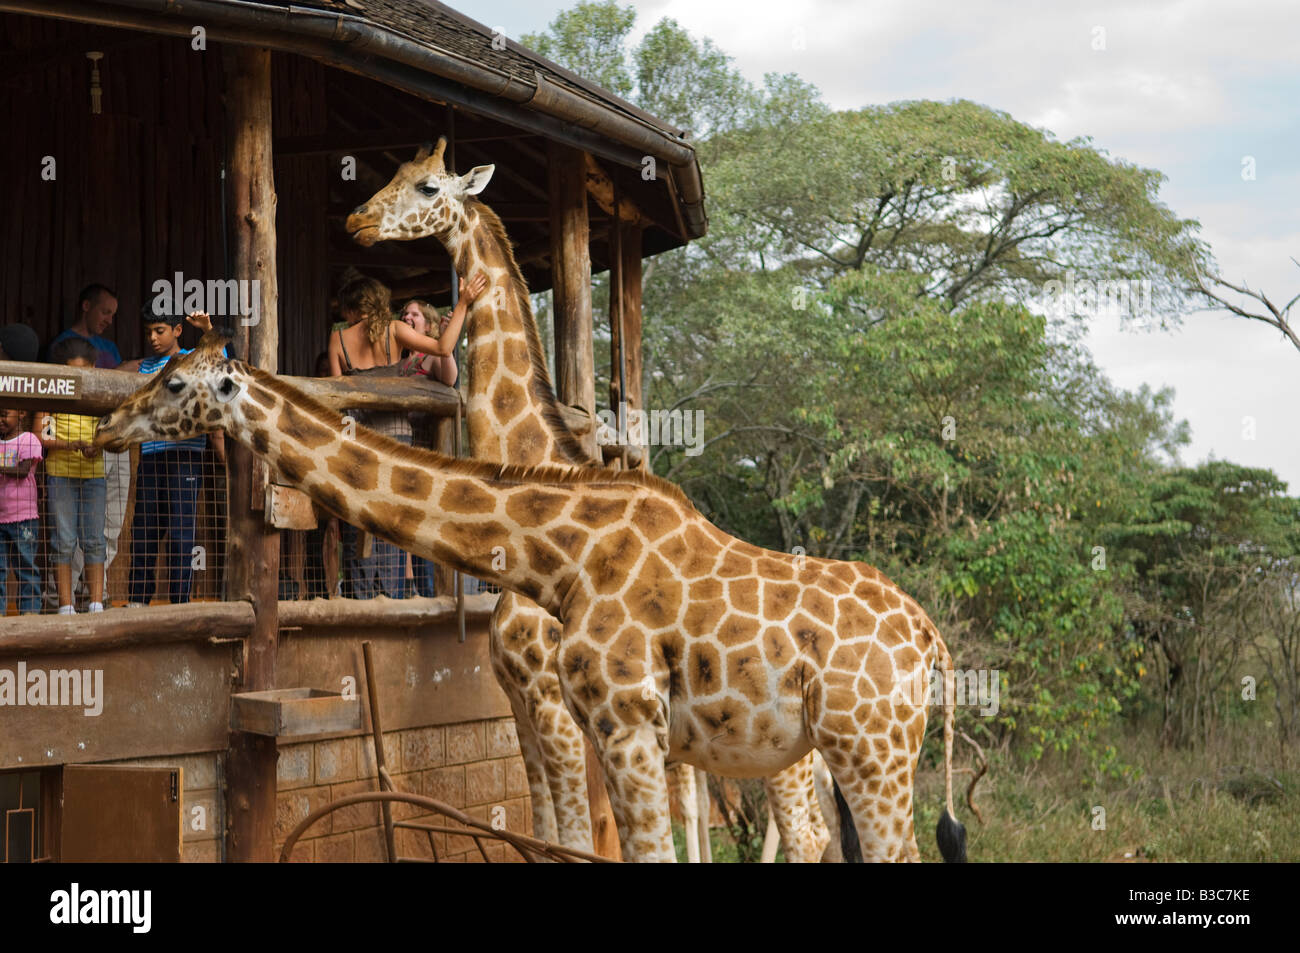 Kenya, Nairobi, Langata Giraffe Centre. Tourists can hand feed the giraffe at giraffe's eye-level at the Langata Giraffe Centre. Stock Photo